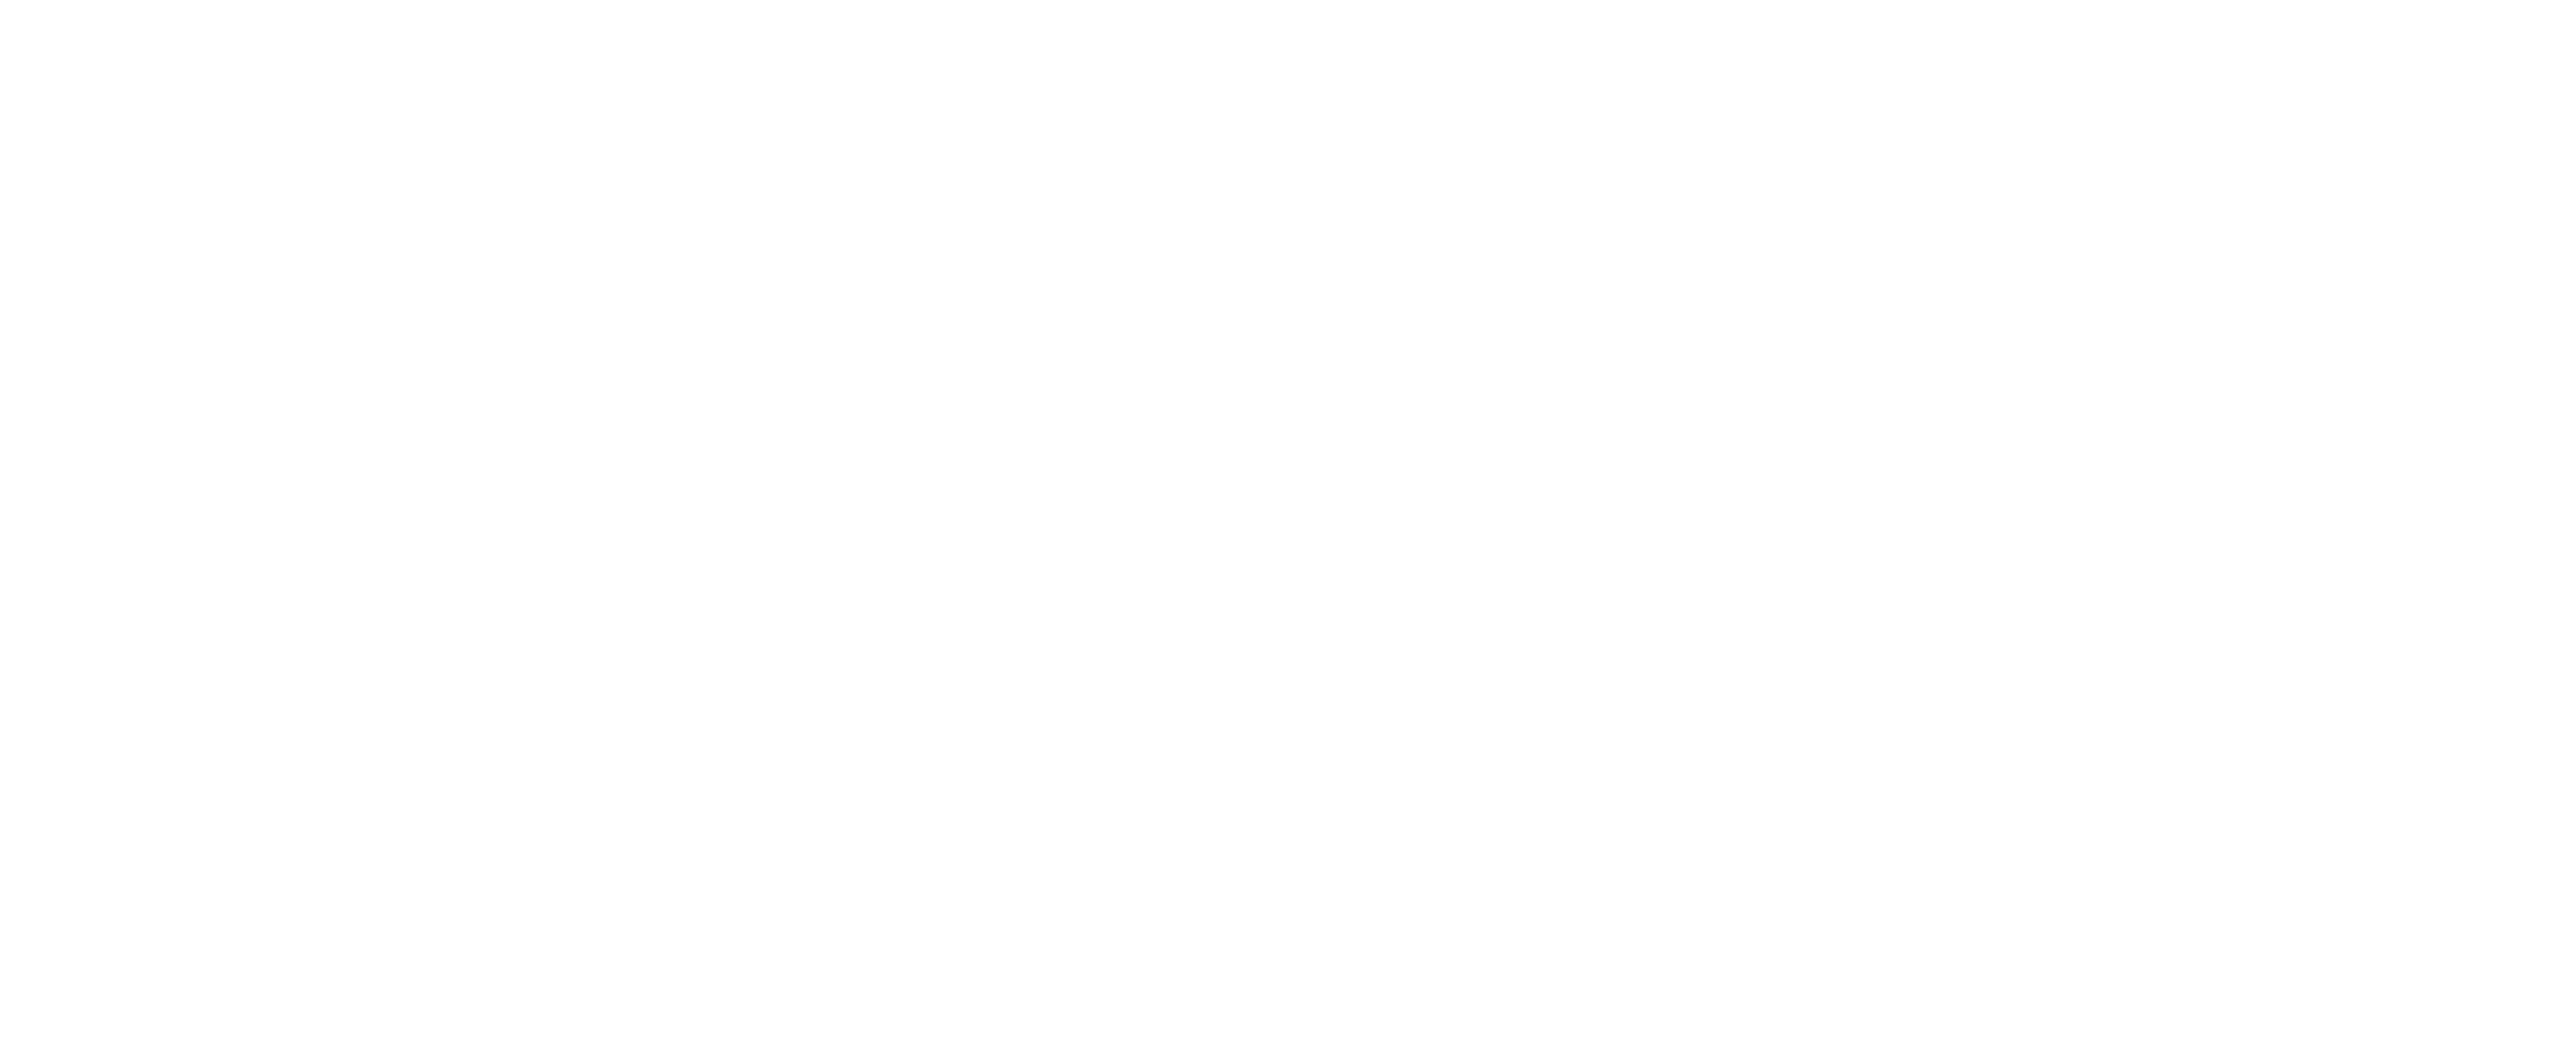 GAIT